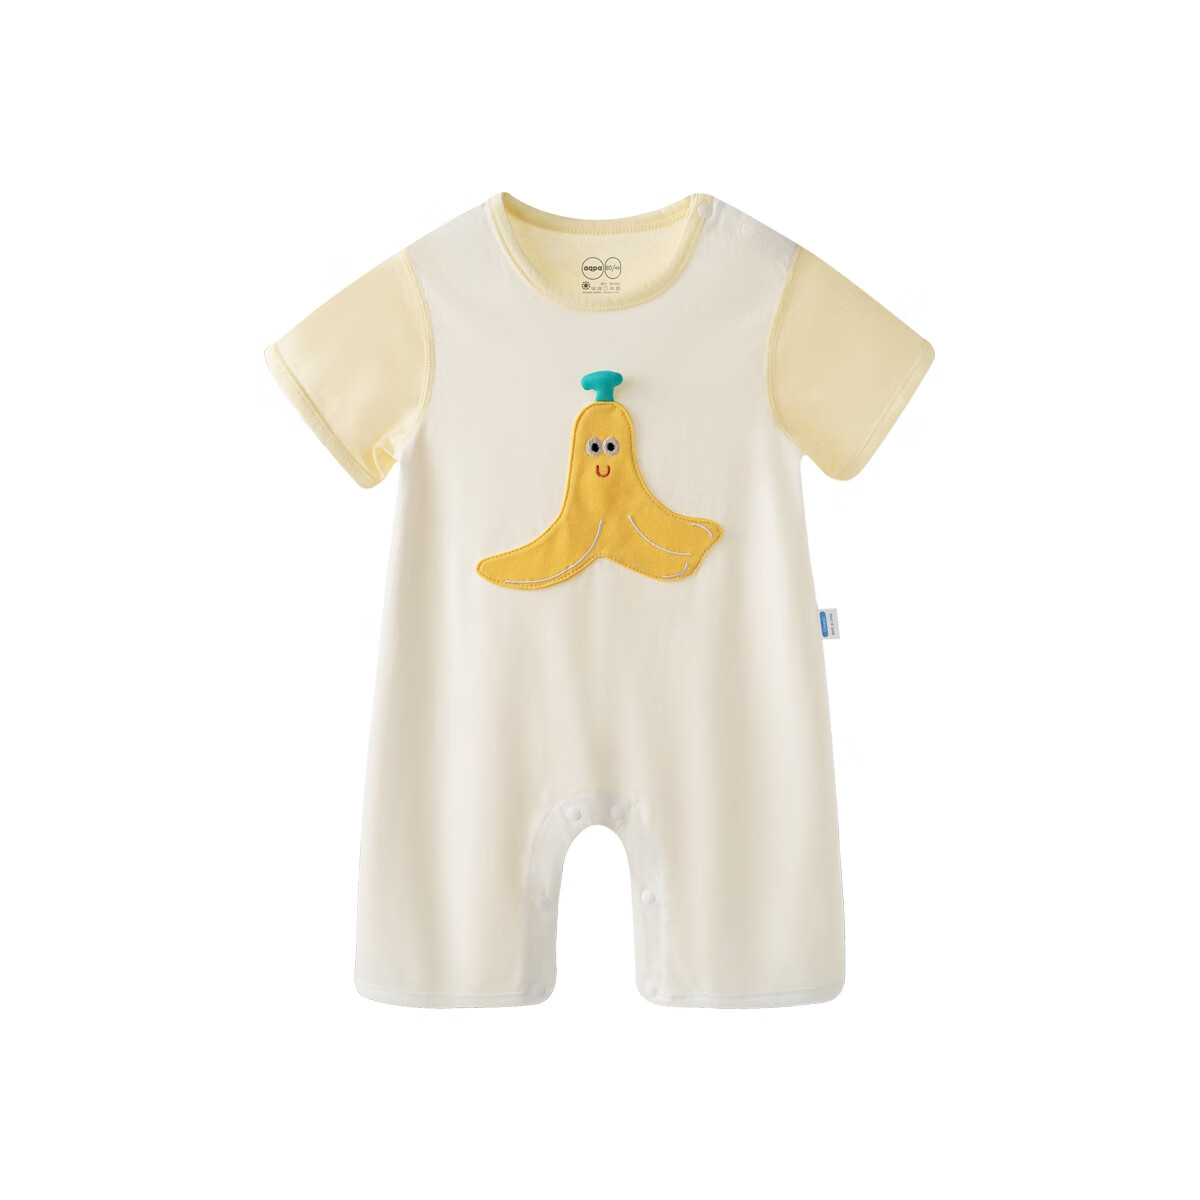 aqpa 爱帕婴儿短袖连体衣哈衣纯棉薄款肩开扣爬服 香蕉乐绣 90cm 55.25元